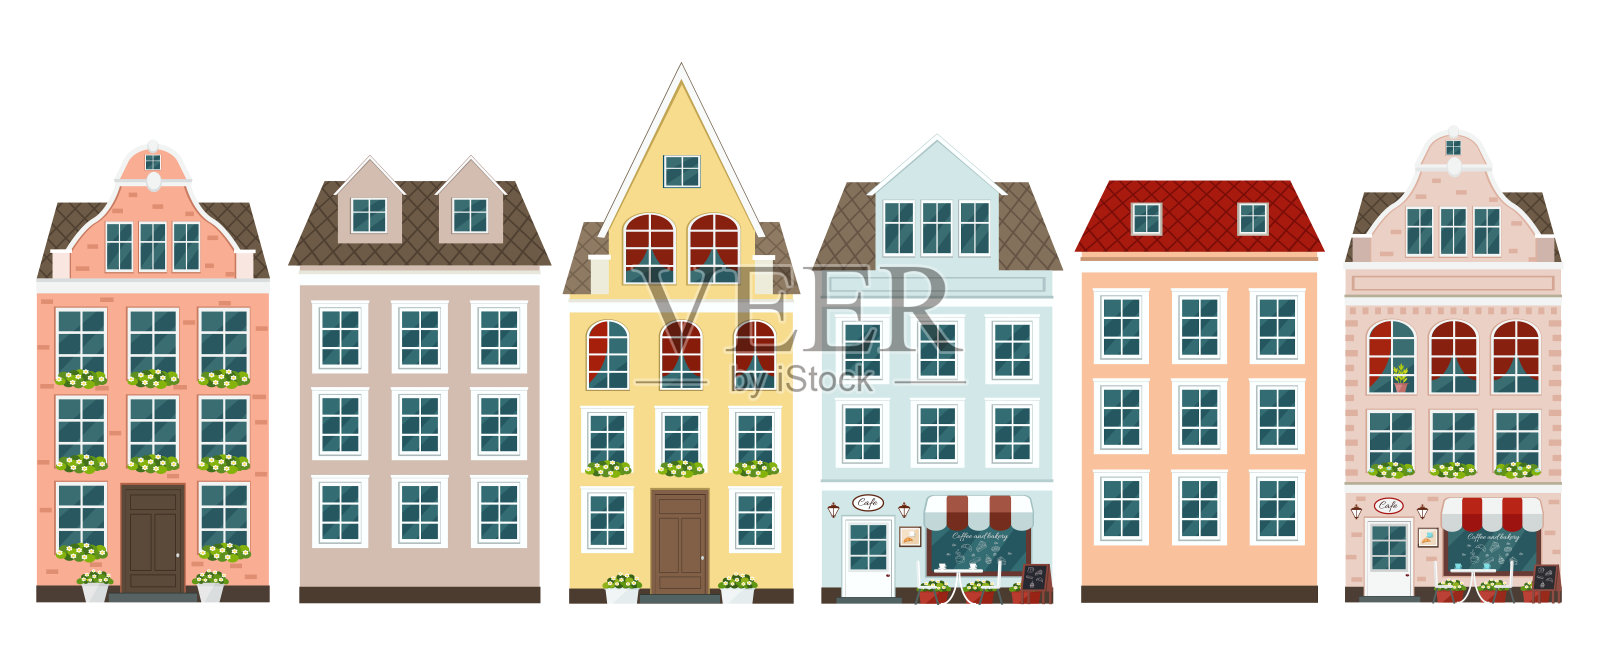 一套欧洲的彩色老房子插画图片素材